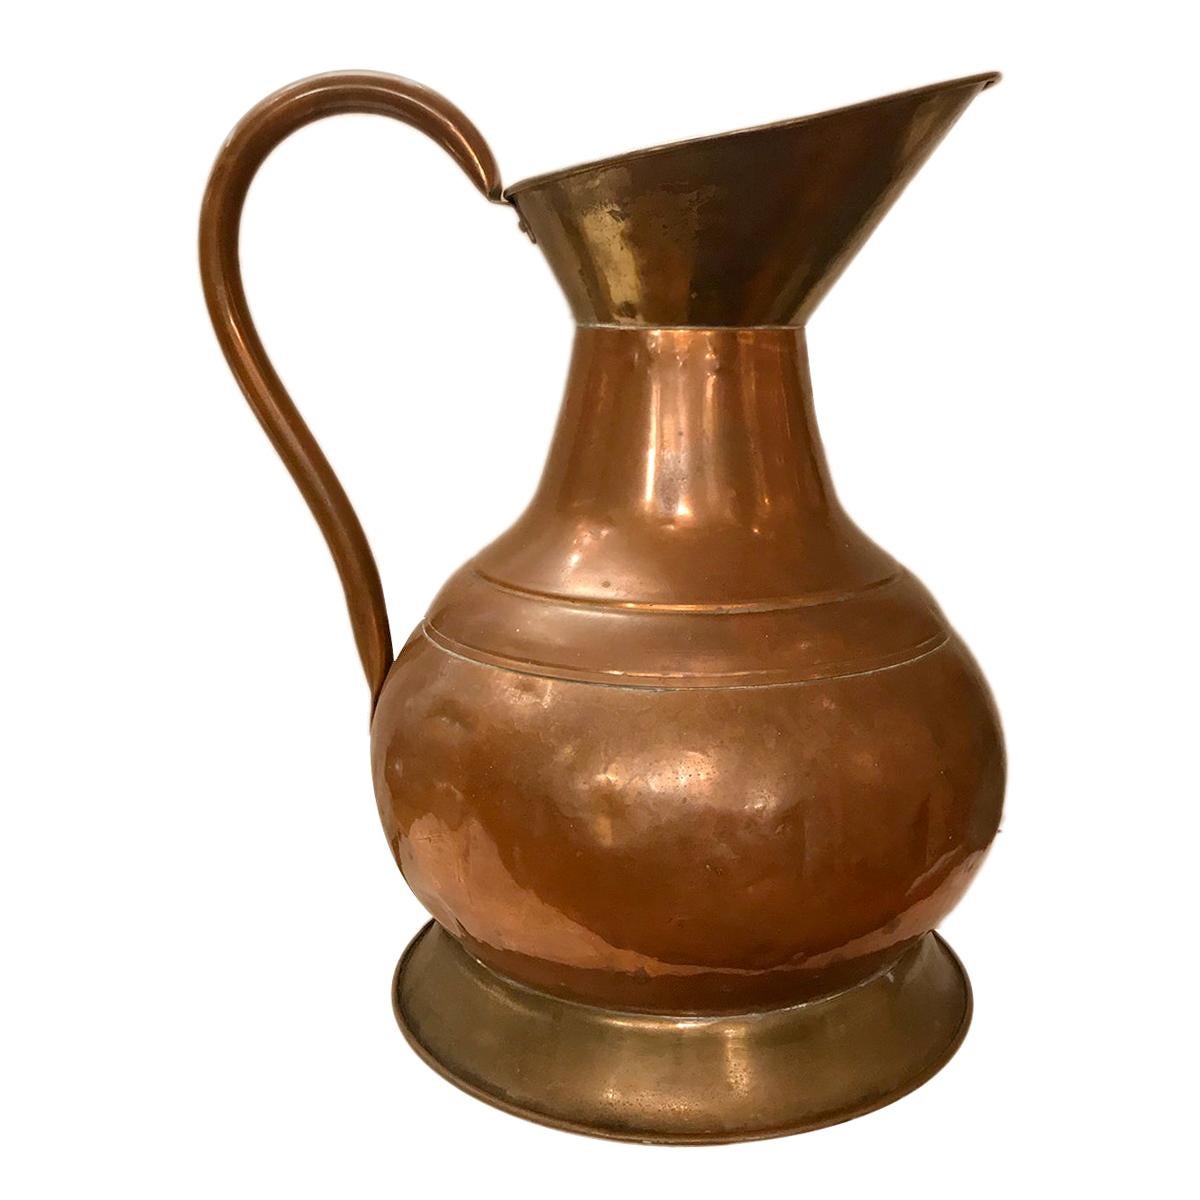 Grand vase/carafe anglaise en cuivre